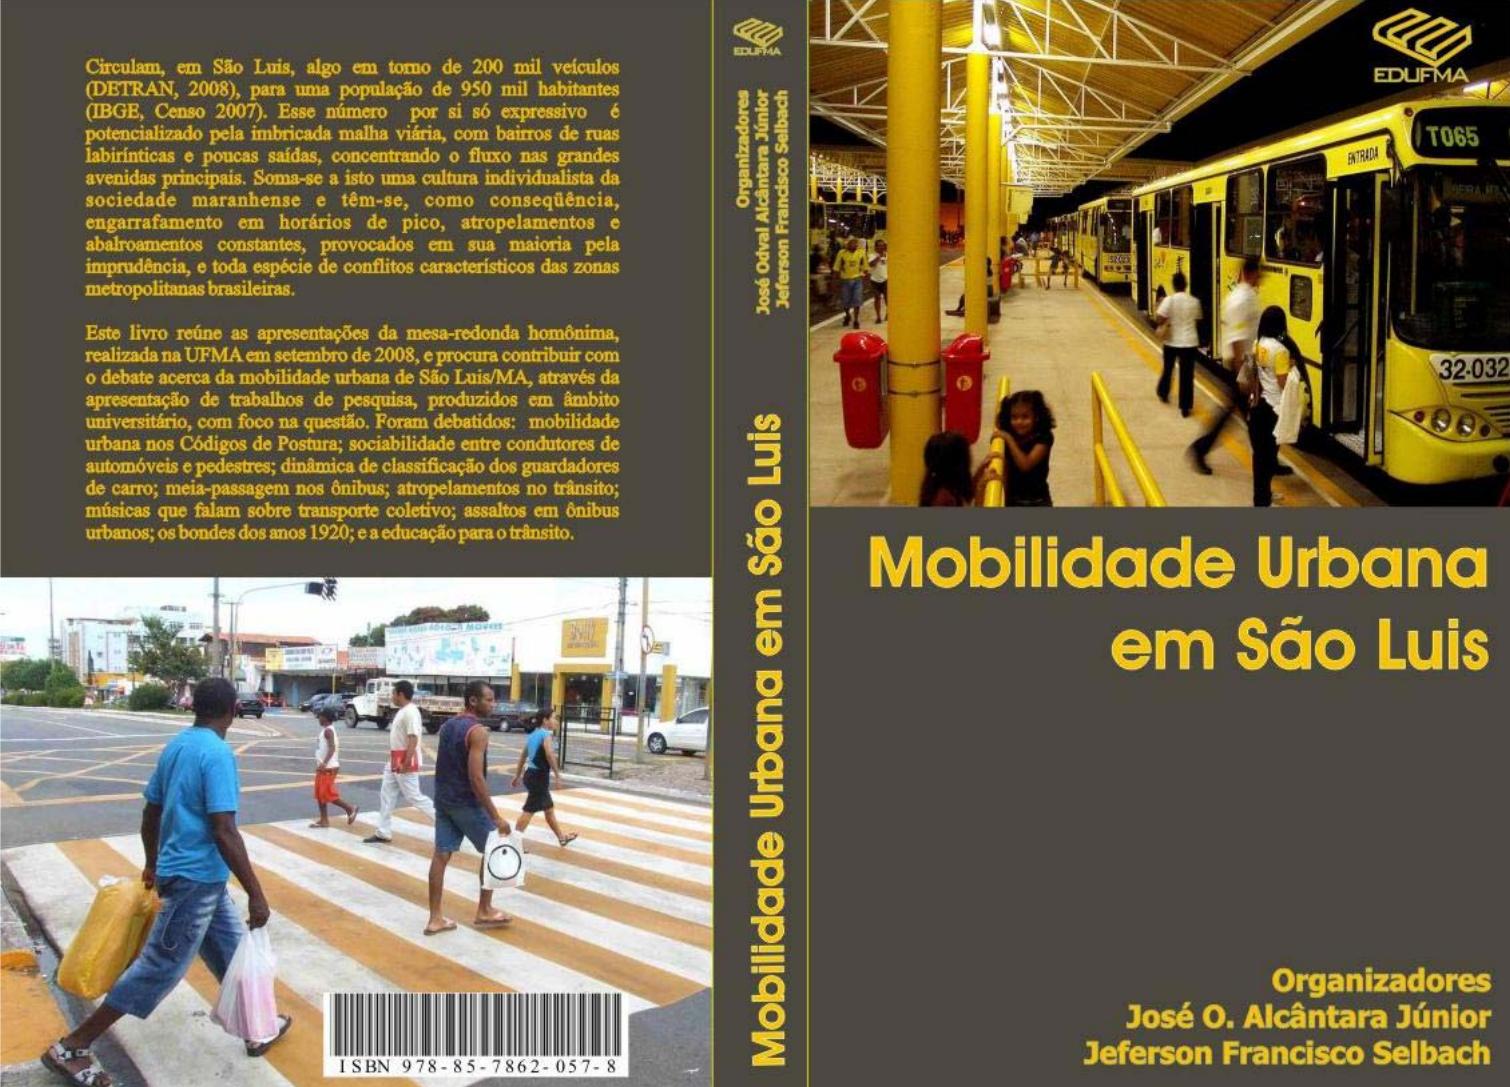 138 avaliações sobre moto trilha slz (Loja de motocicletas) em São Luís  (Maranhão)